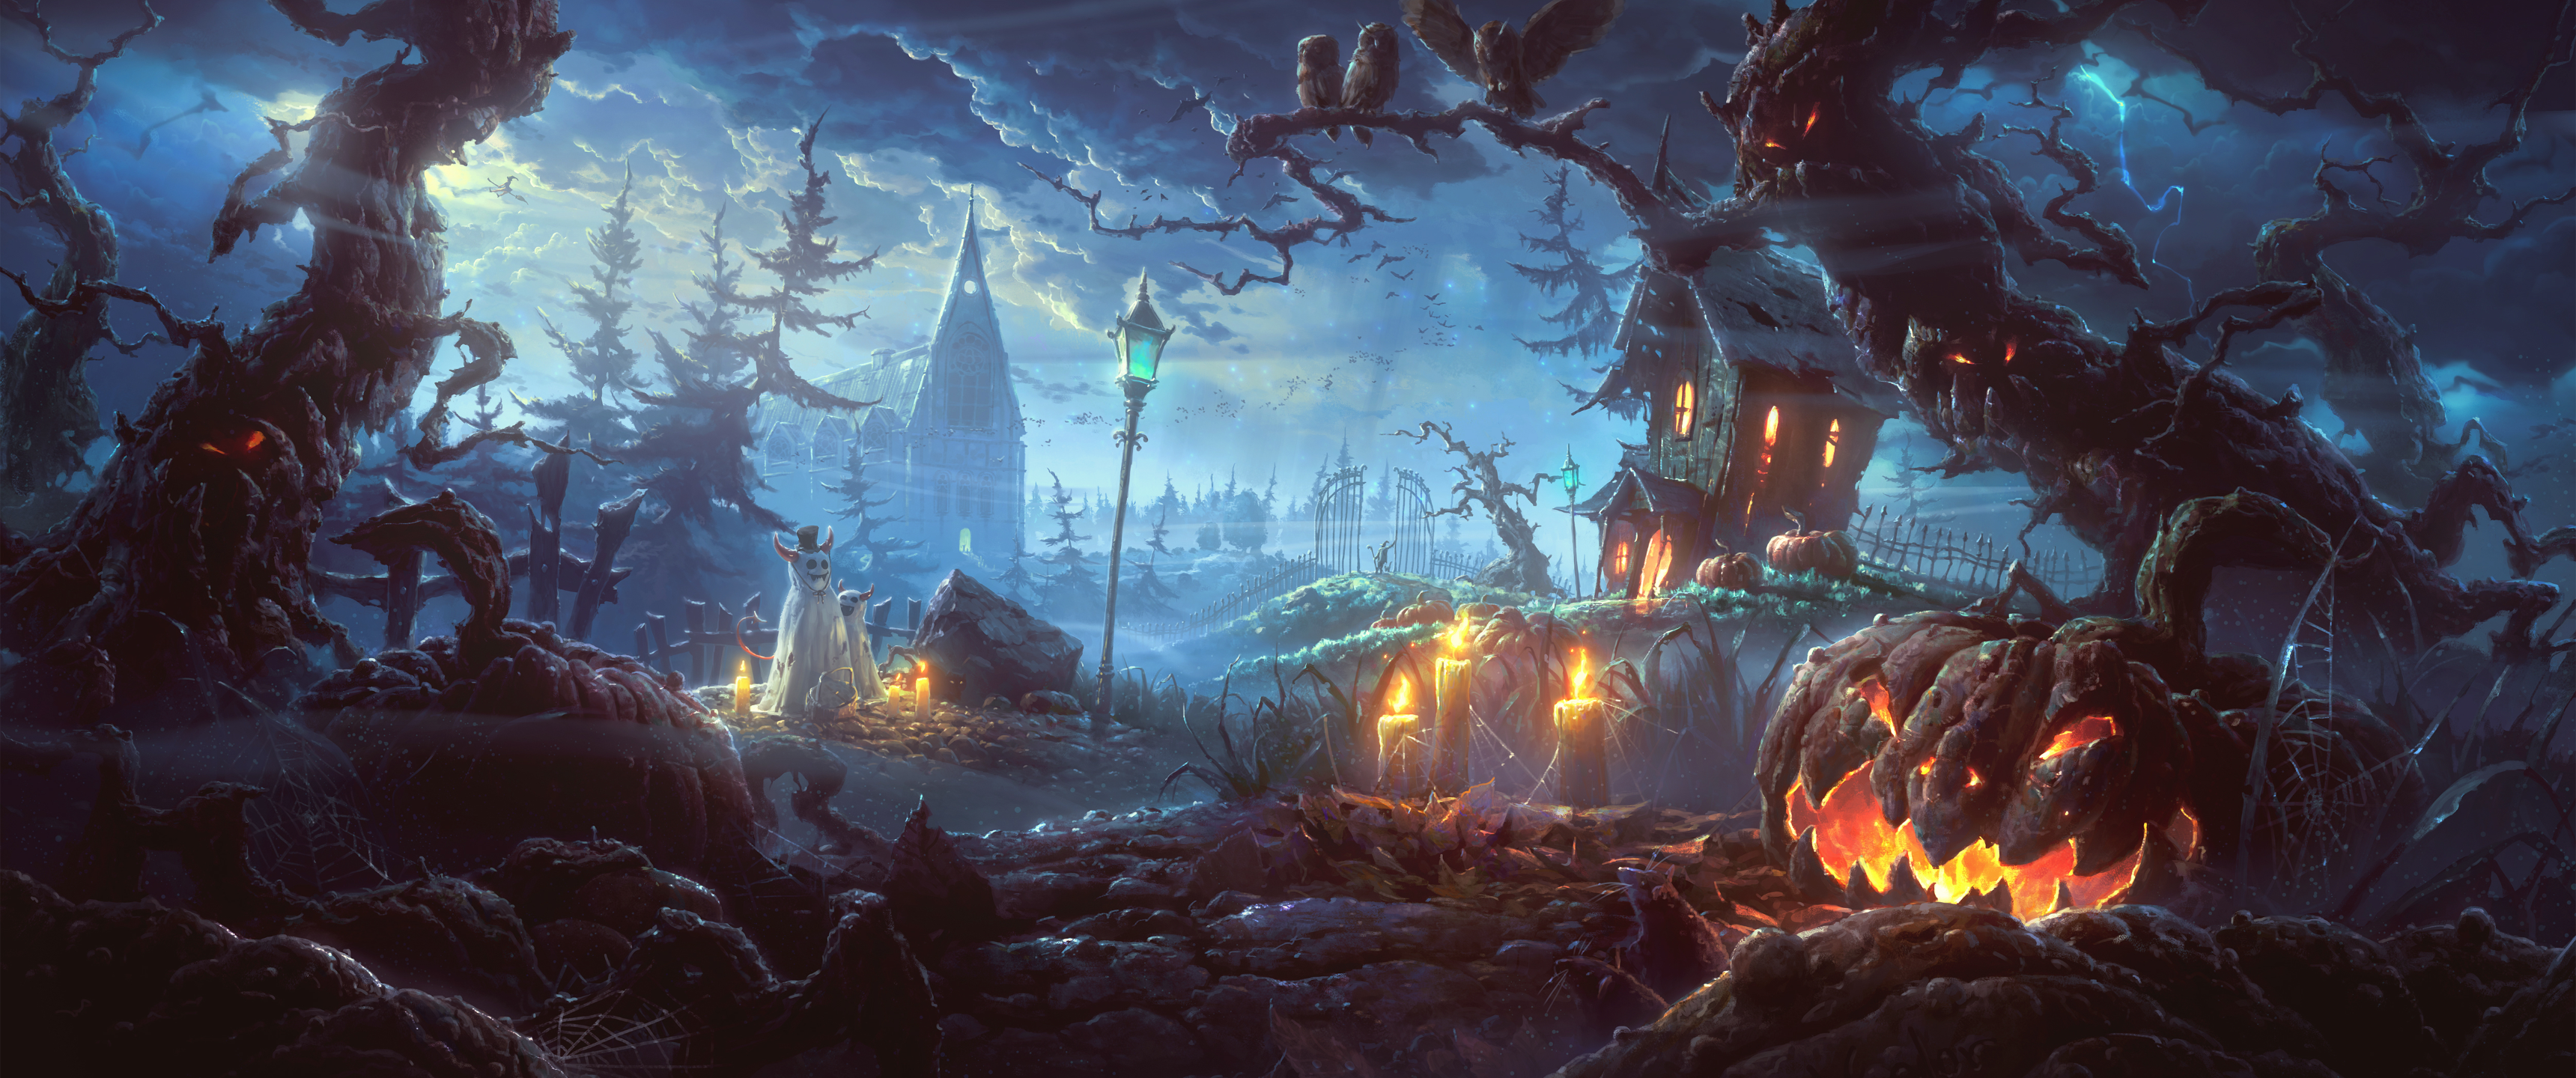 Halloween [3440 x 1440]. Halloween wallpaper background, Halloween wall art, Halloween desktop wallpaper